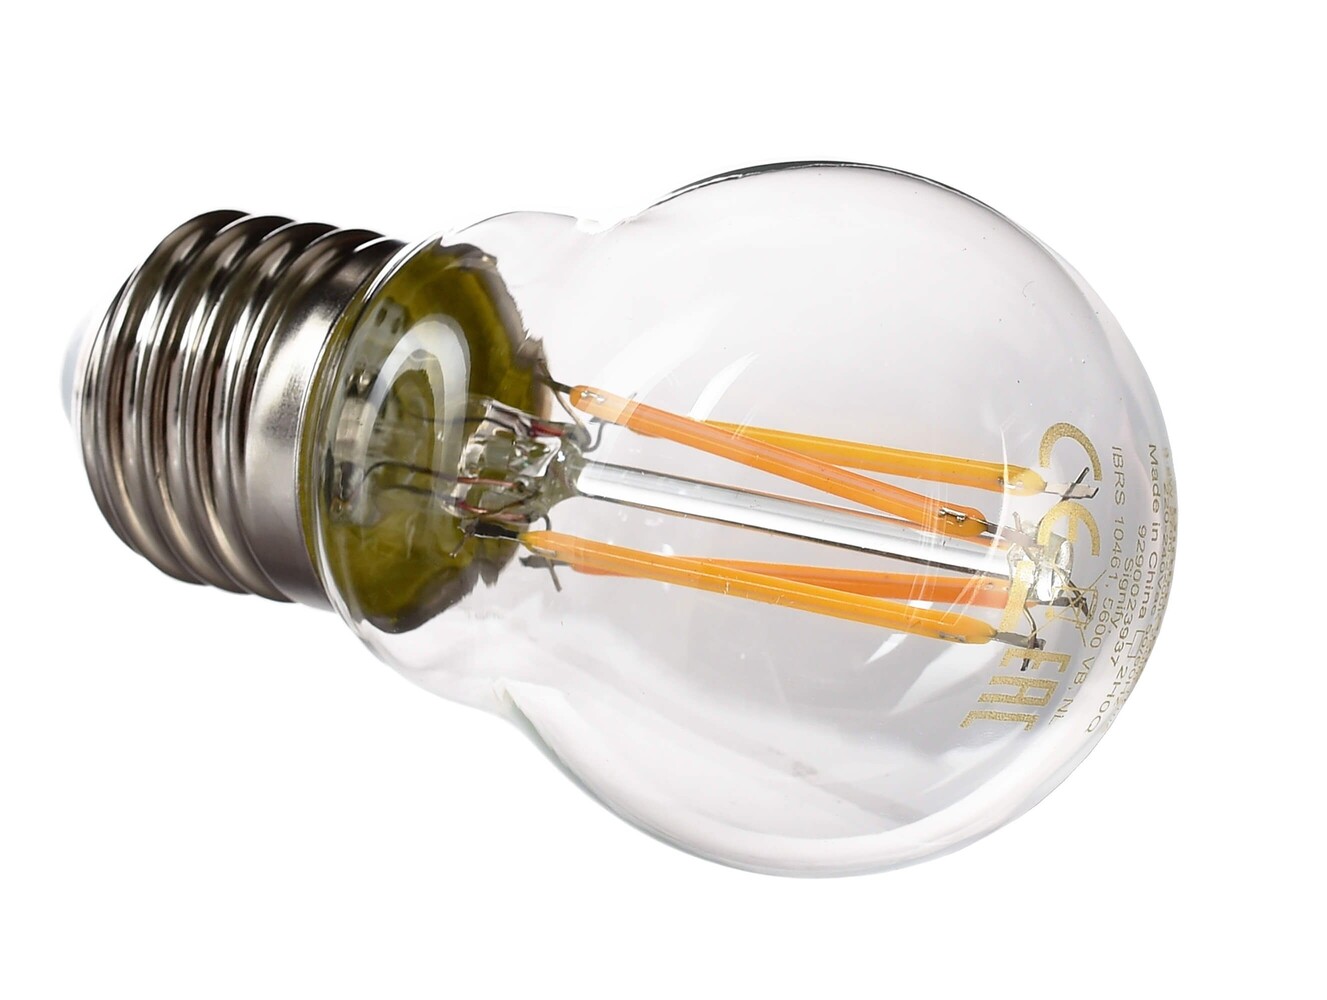 Hochqualitatives LED-Leuchtmittel der Marke Philips mit energieeffizienter Leuchtkraft